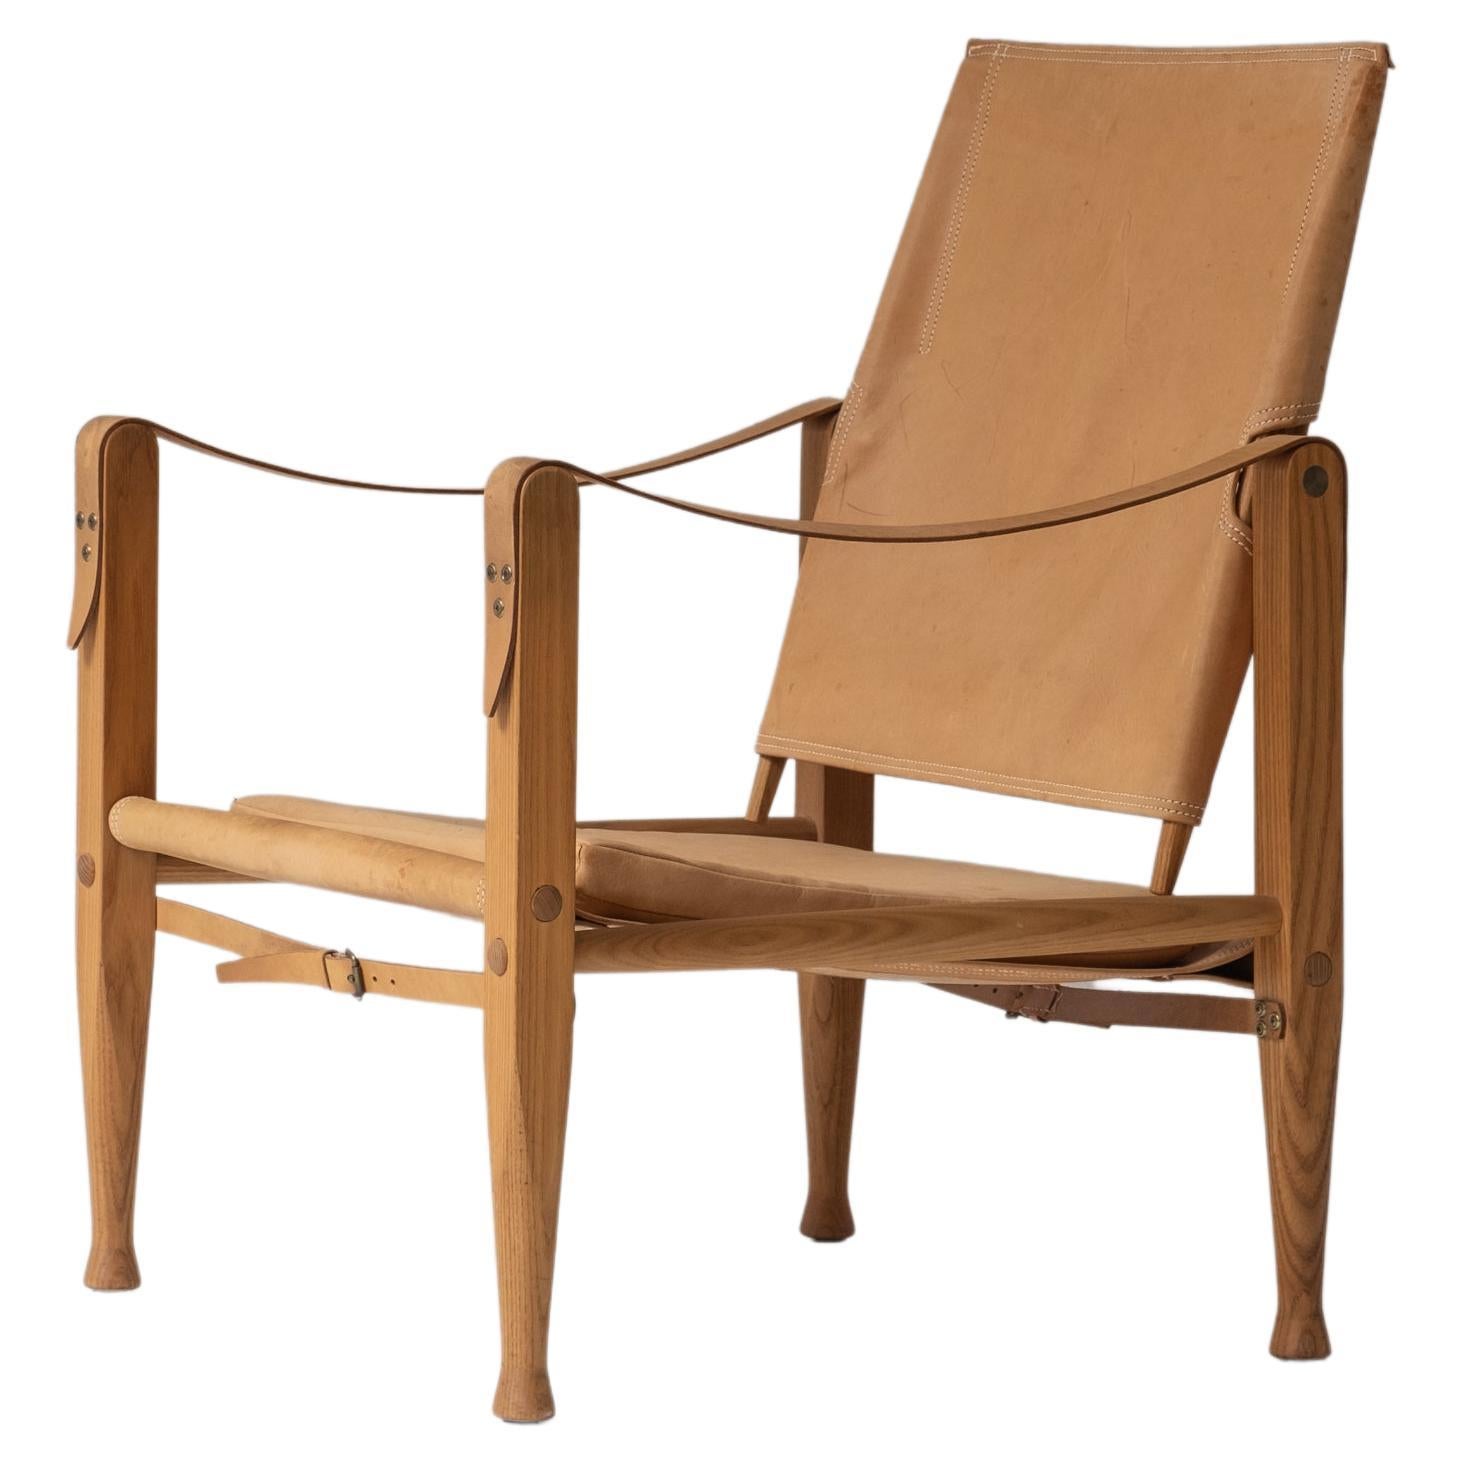 Lovely ‘Safari’ Easy Chair by Kaare Klint for Rud Rasmussen, Denmark 1950s